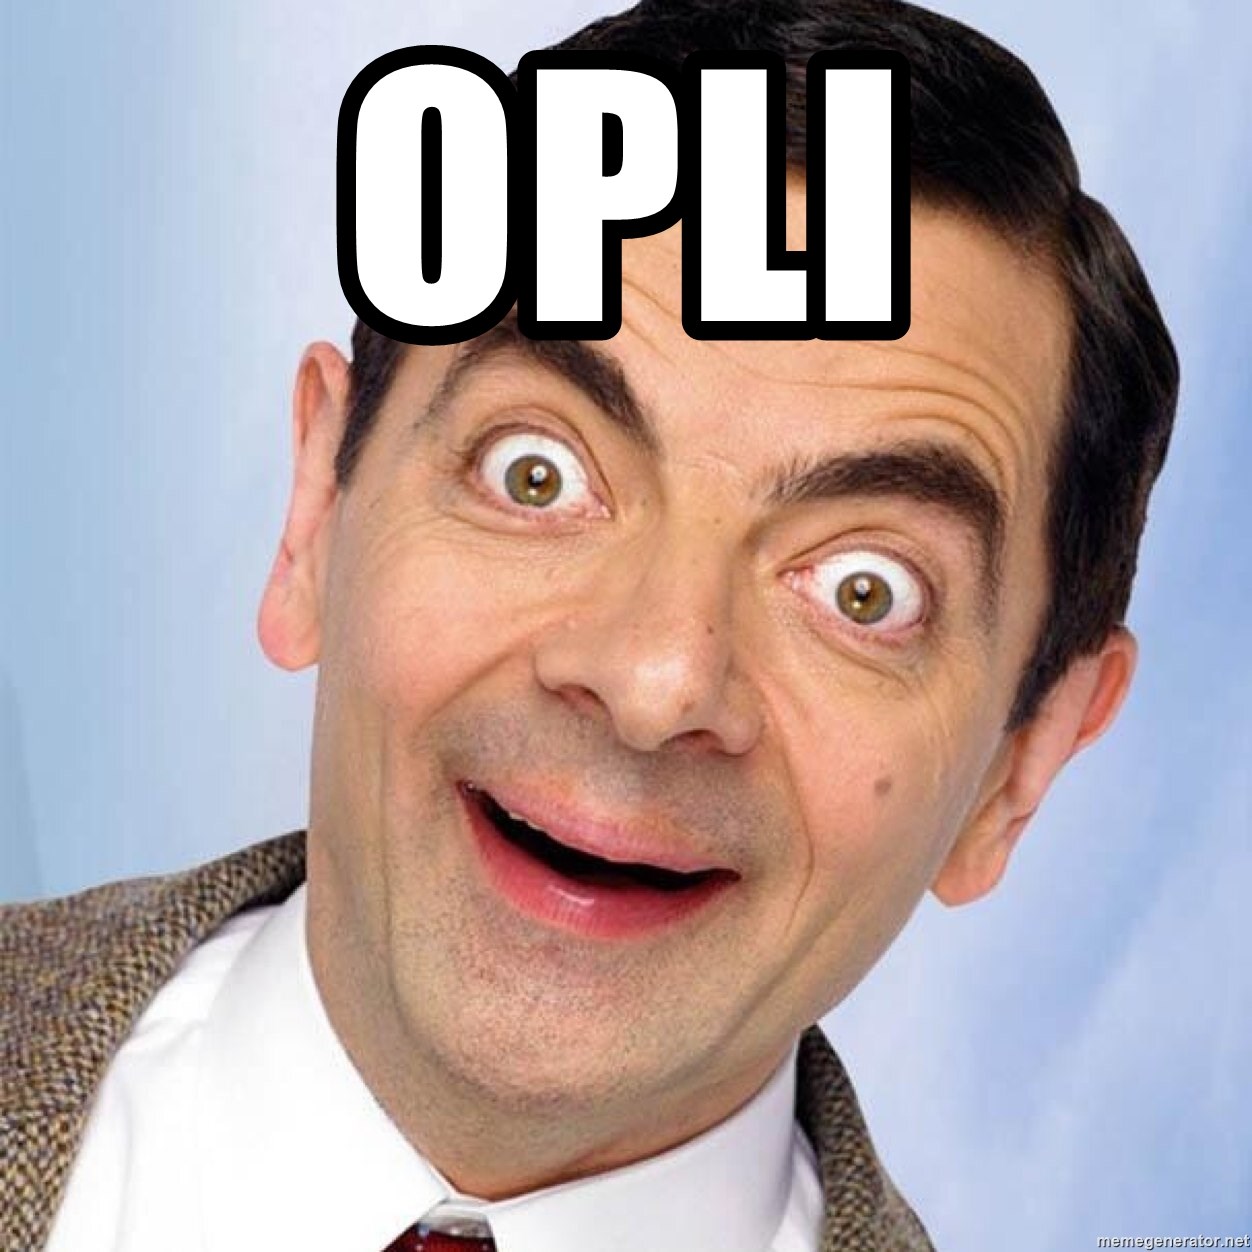 Mr Mr Mr Bean - opli